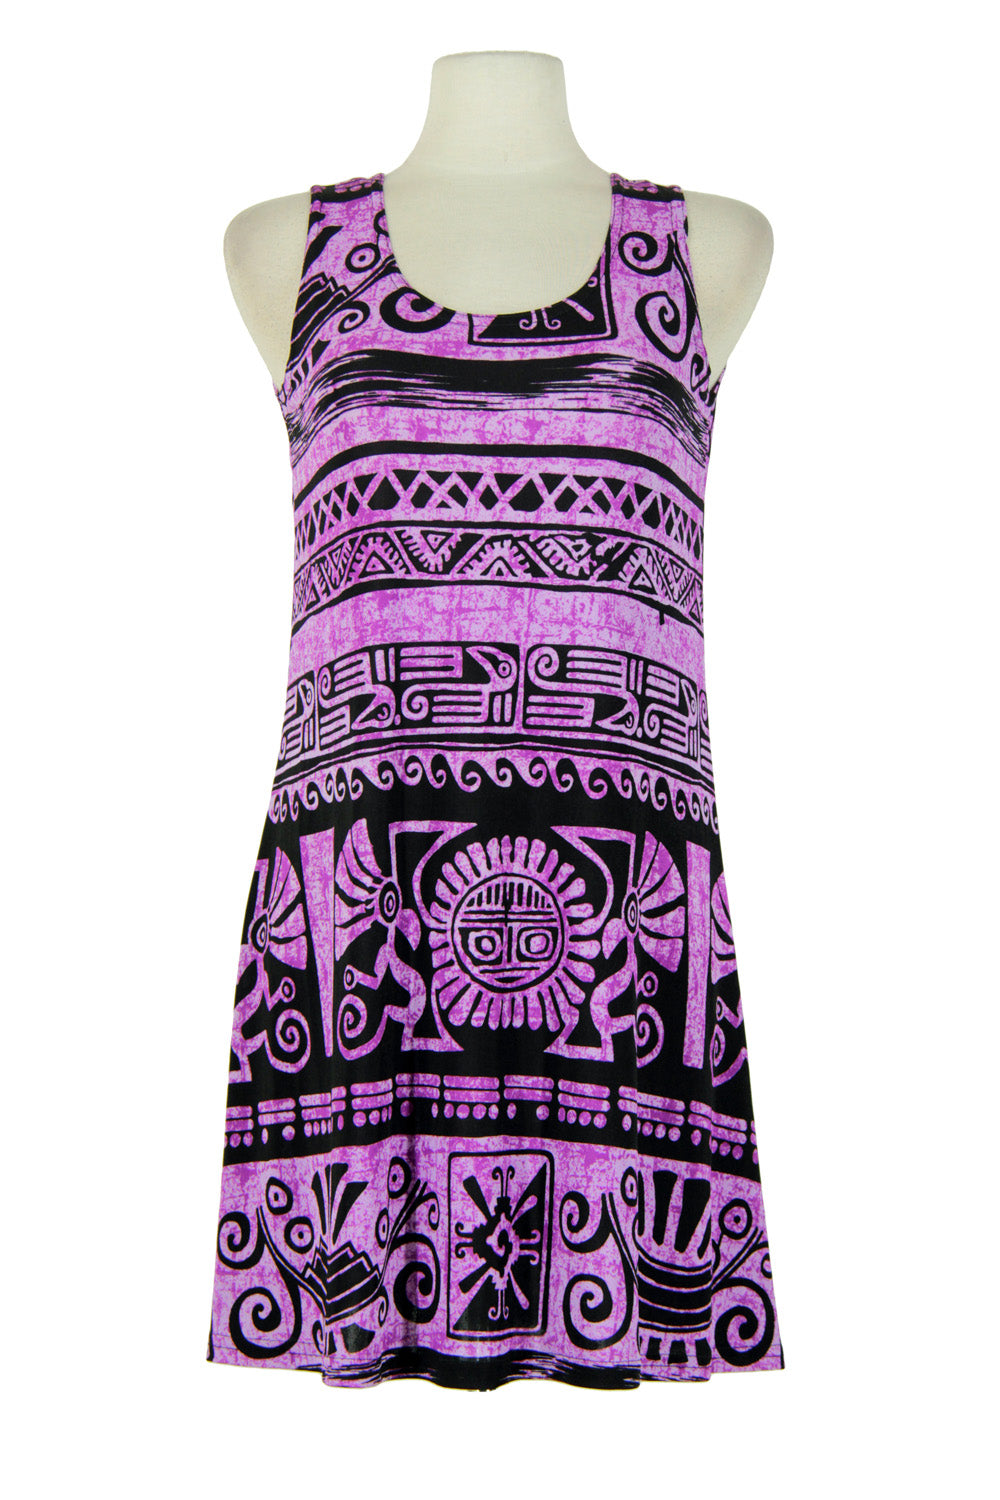 Jostar Women's Stretchy Missy Tank Dress Print, 703BN-TP-W901 - Jostar Online